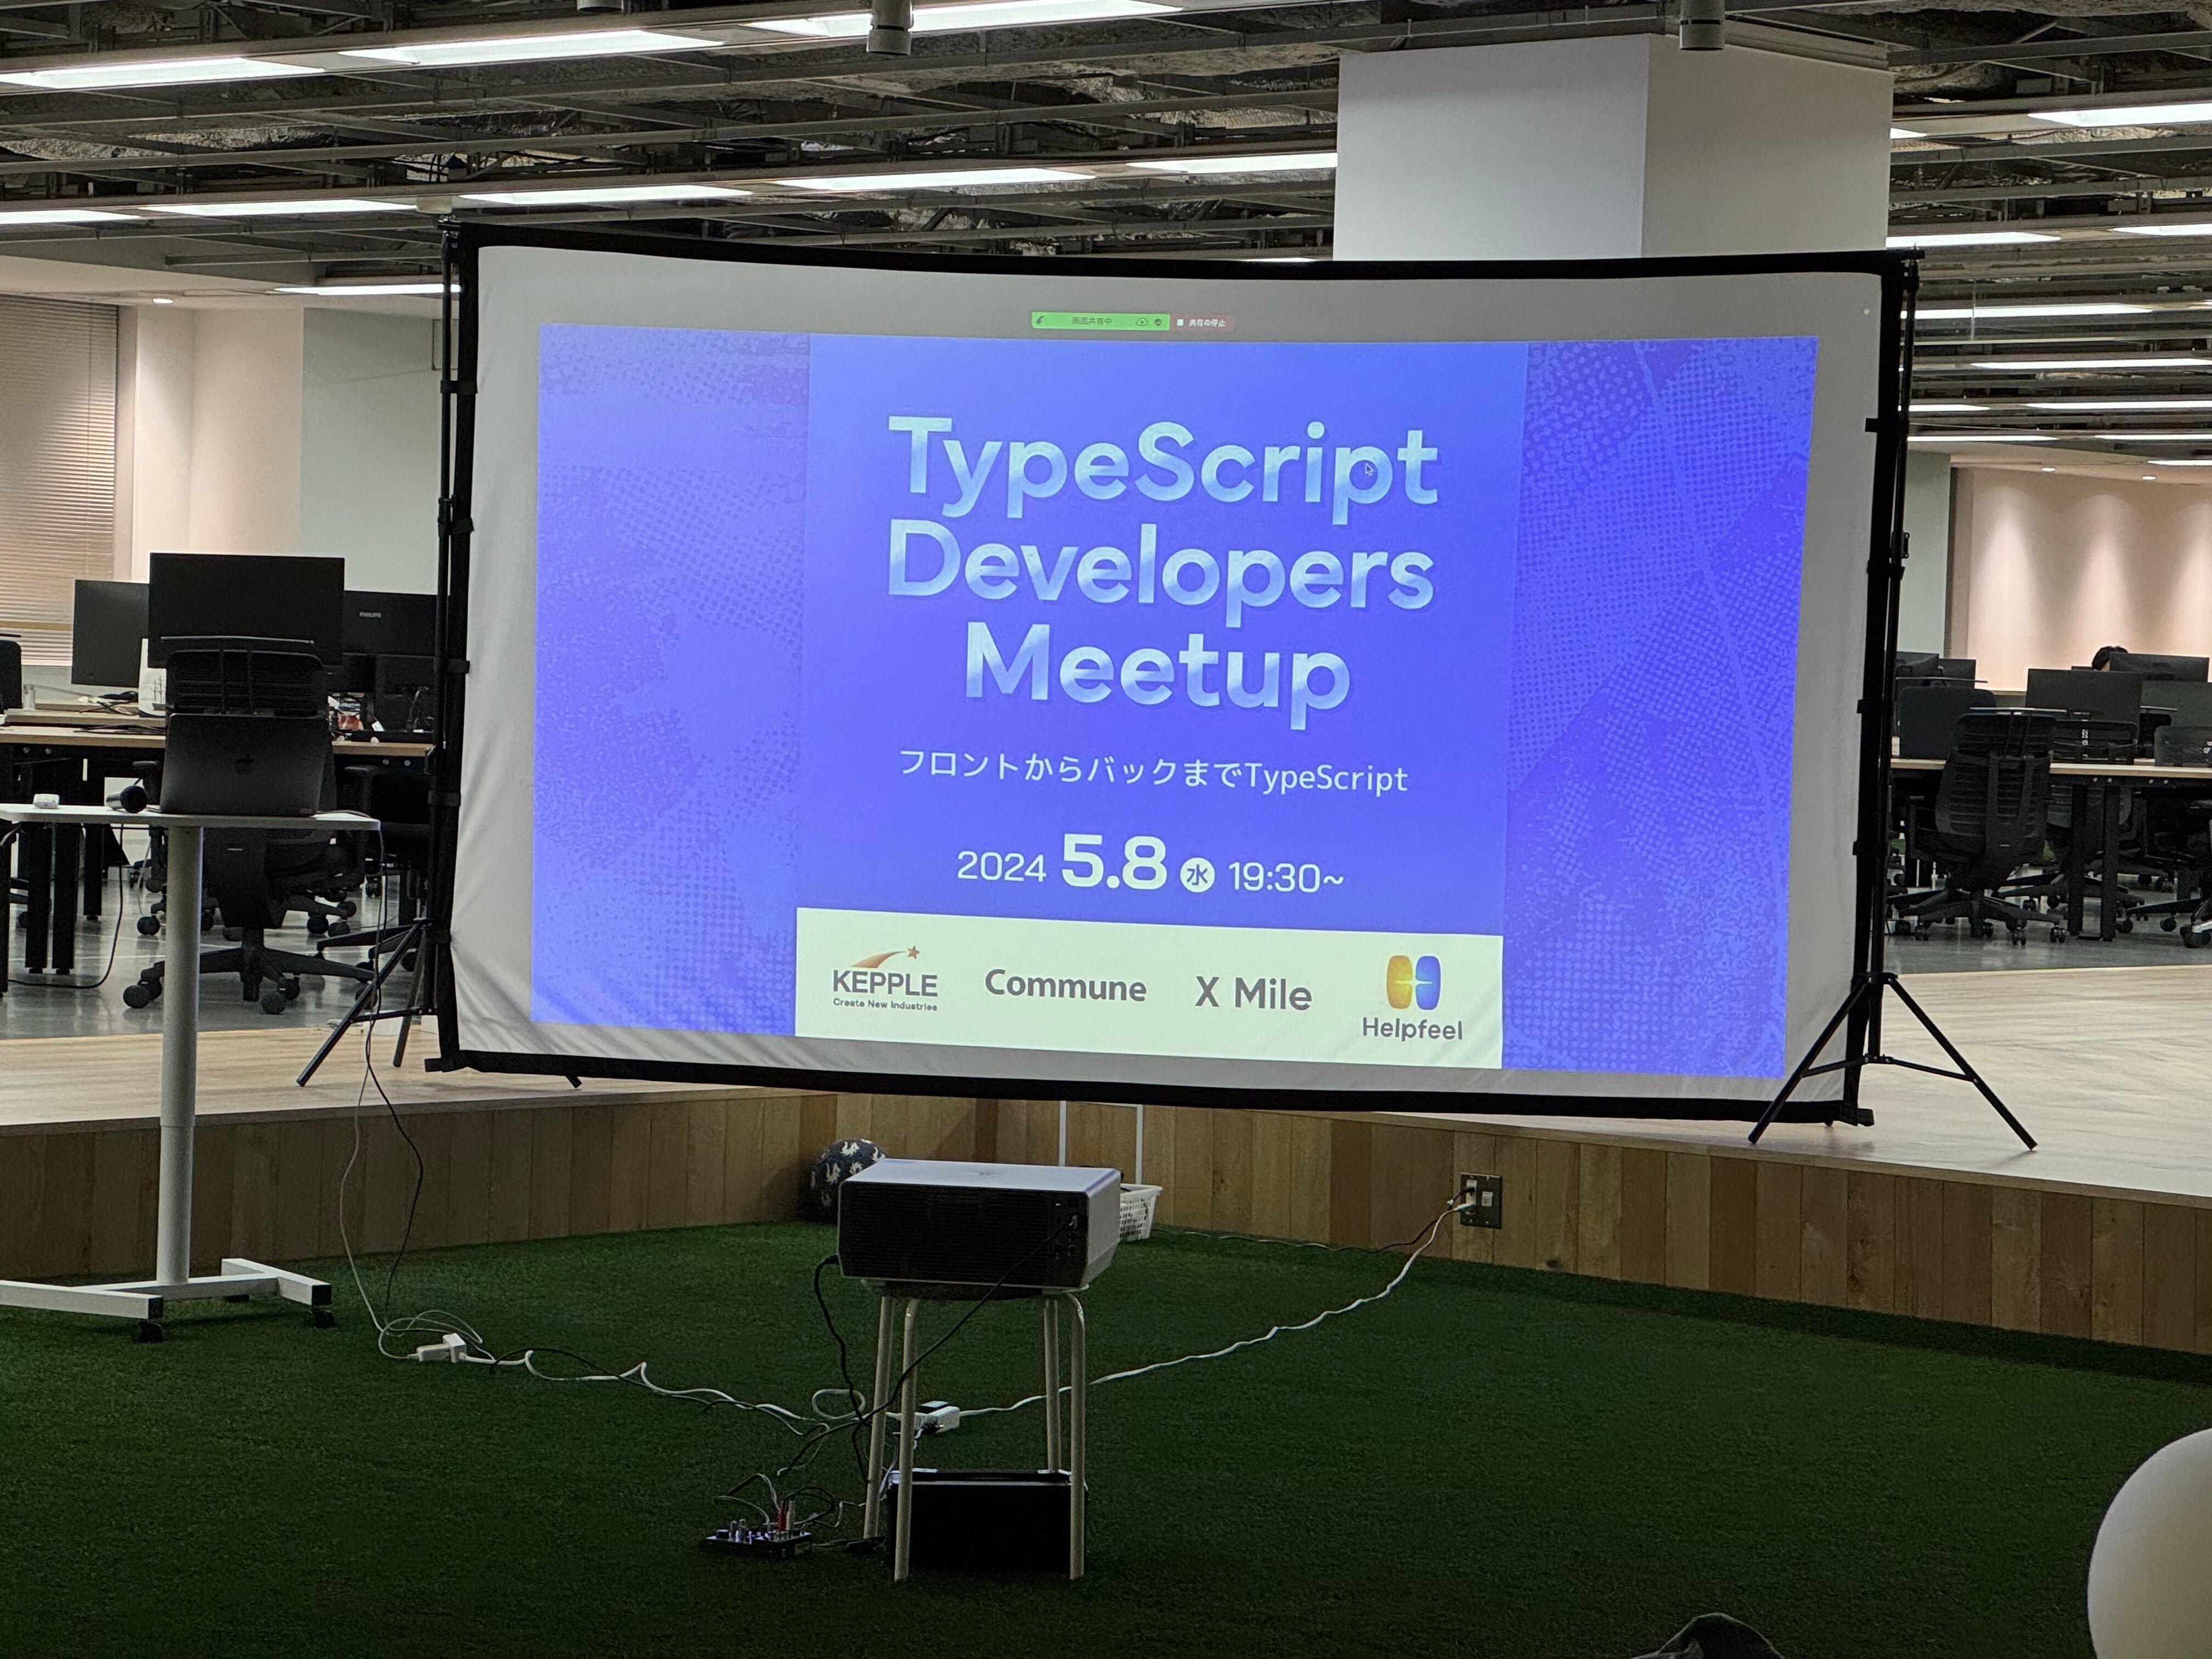 TypeScript Developers Meetupと書かれたスライドが写っている室内の写真です。室内ですが芝生が生えていて、その上にプロジェクターが設置されています。